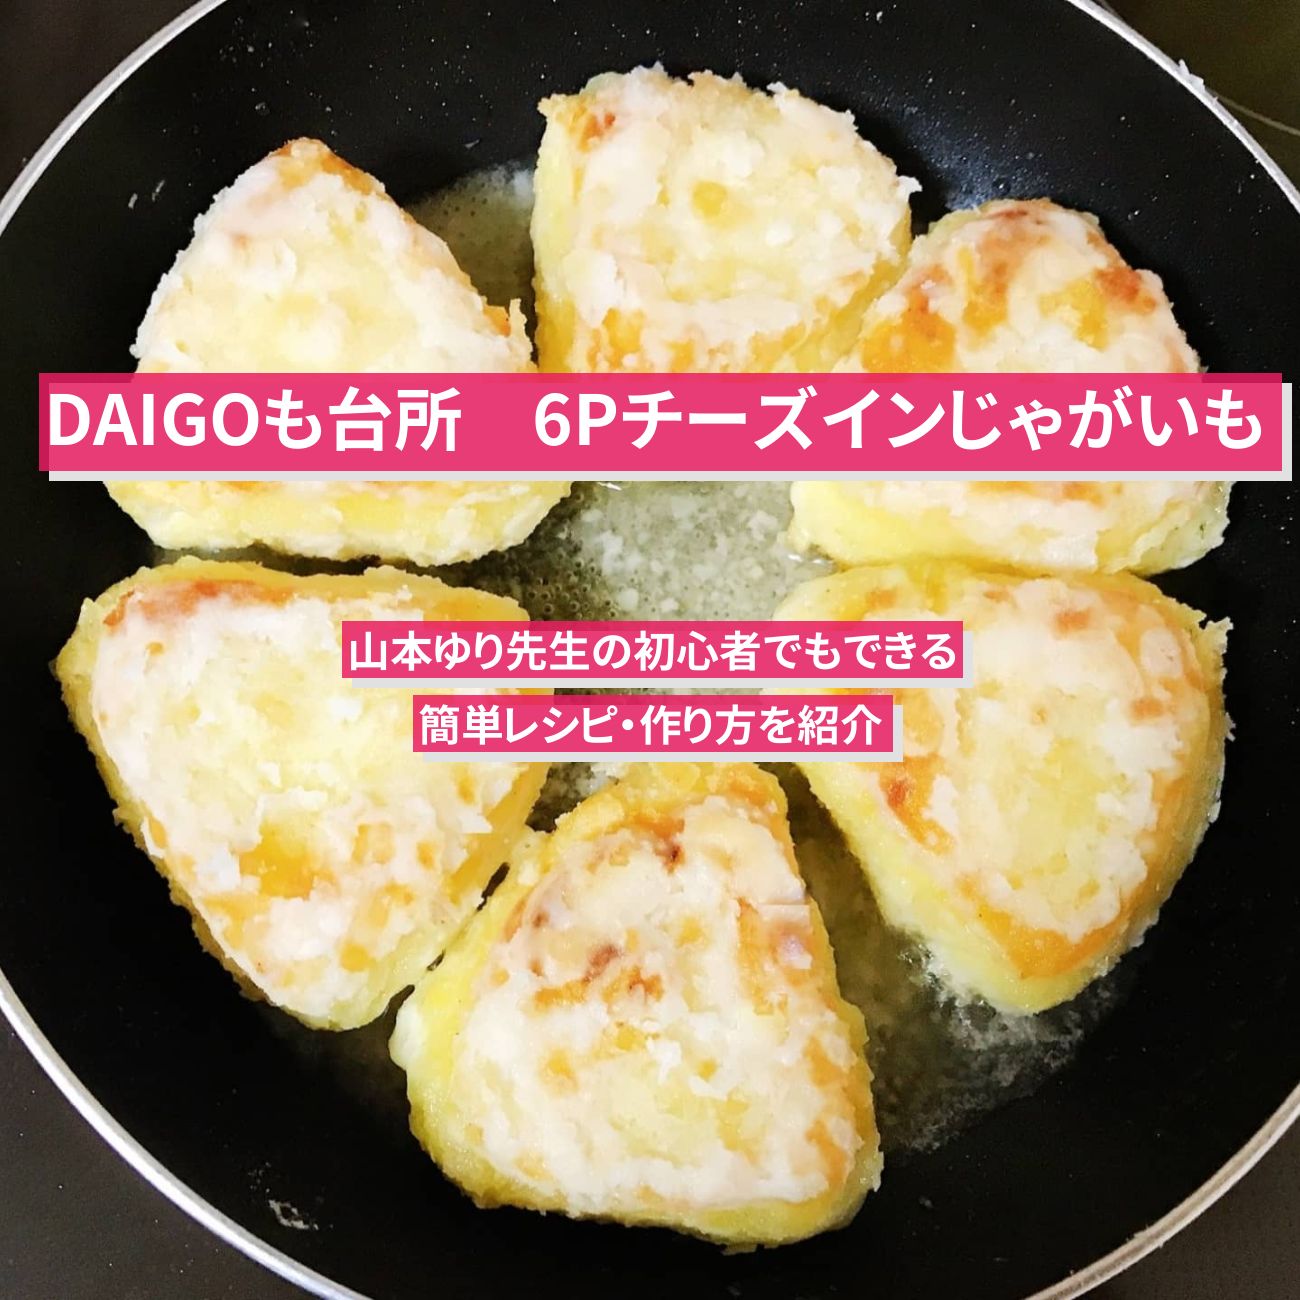 【DAIGOも台所】『6Pチーズインじゃがいも』のレシピ・作り方を紹介